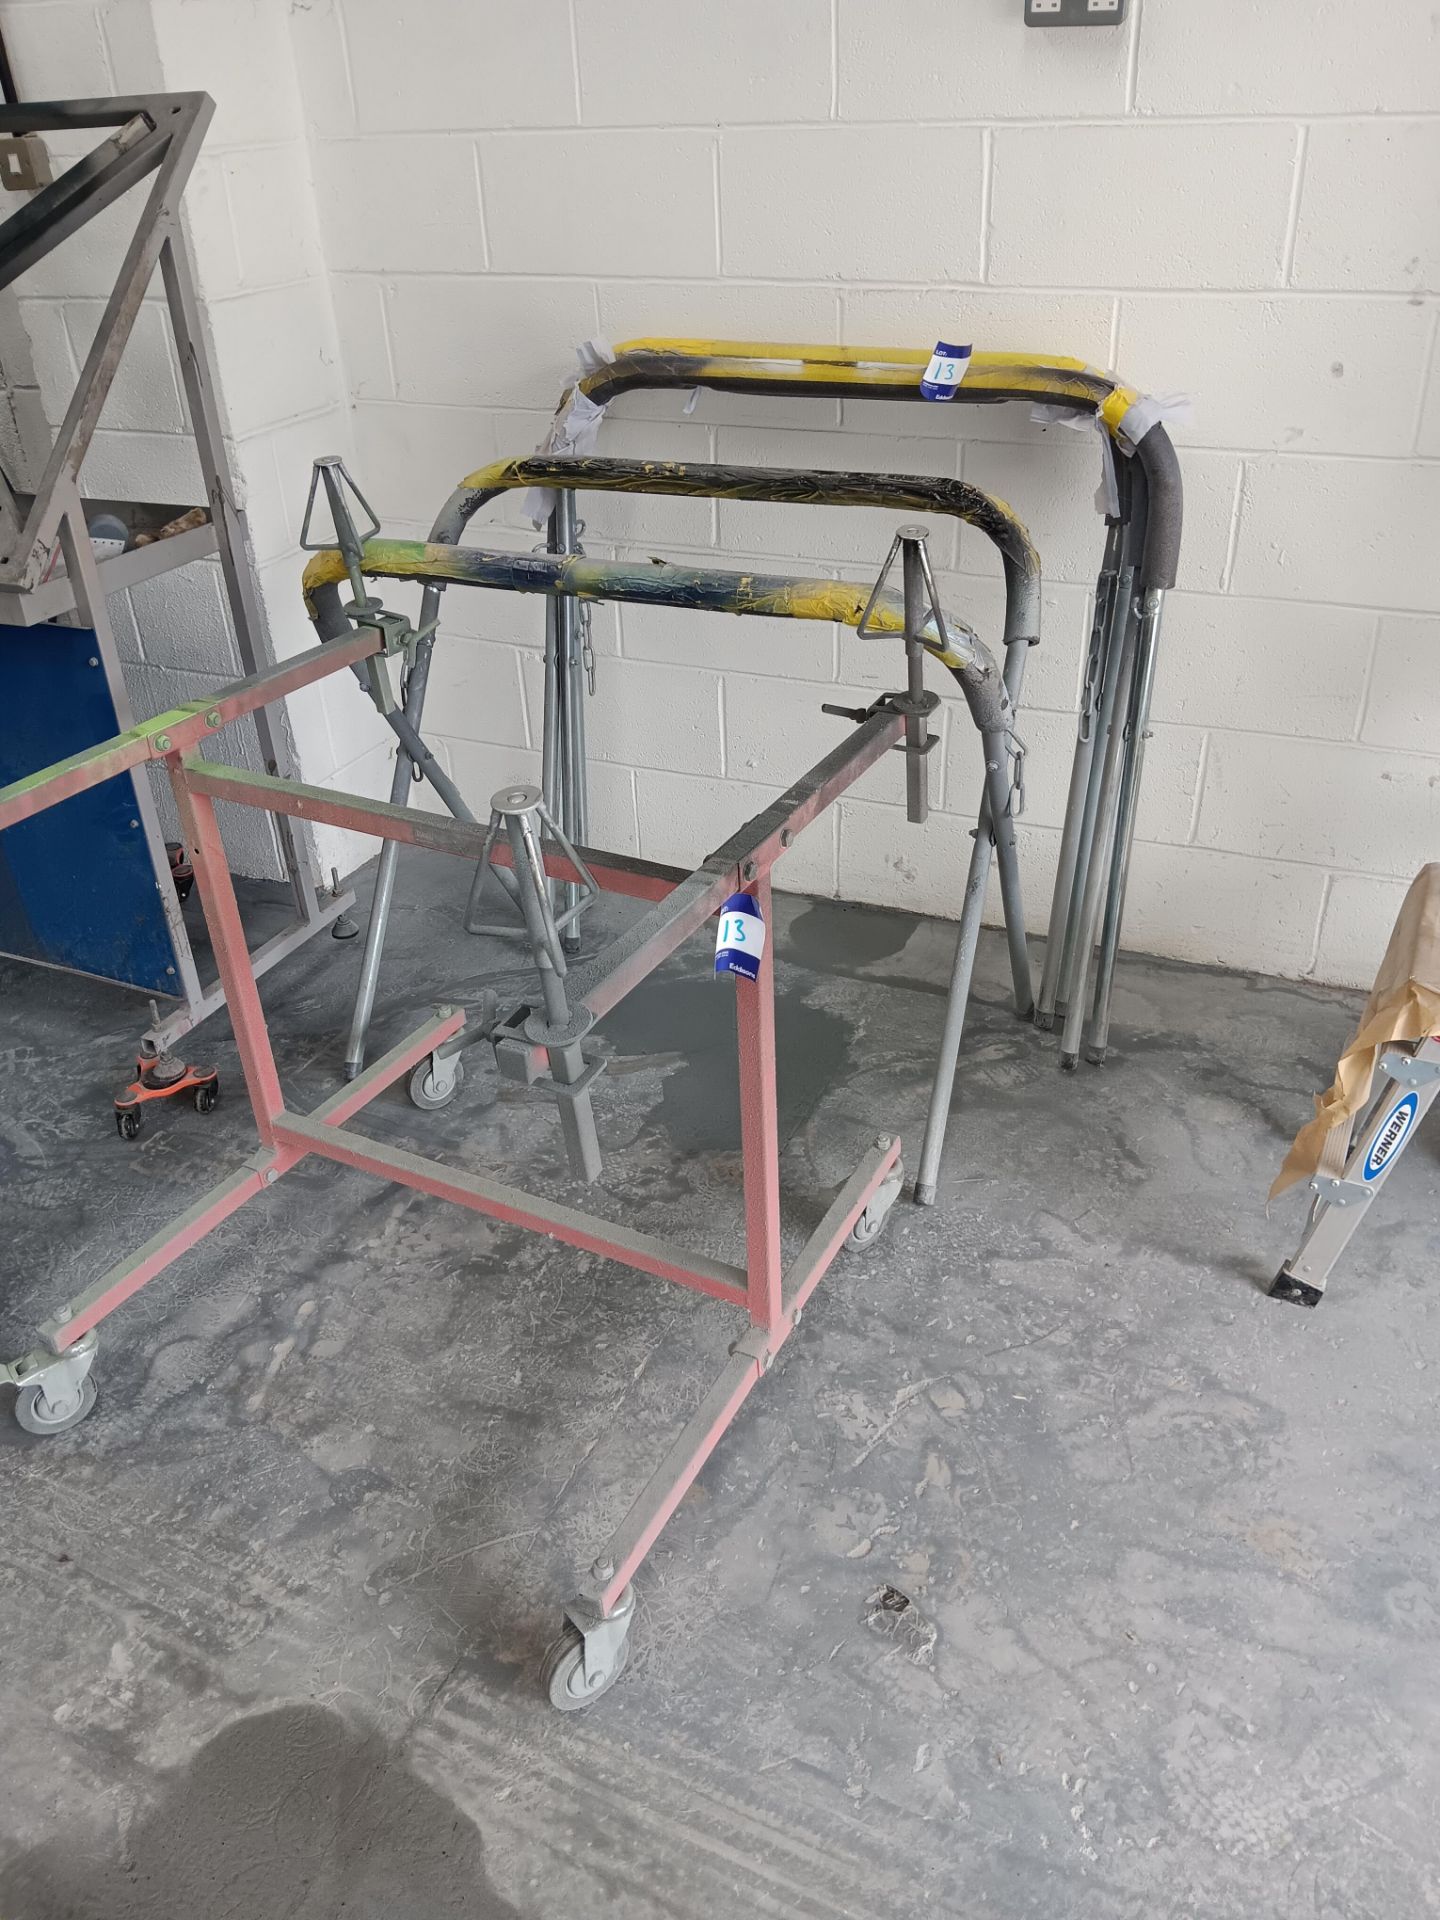 Sealey MK74 4-wheel capacity alloy wheel repair stand, 3 x aluminium folding trestles